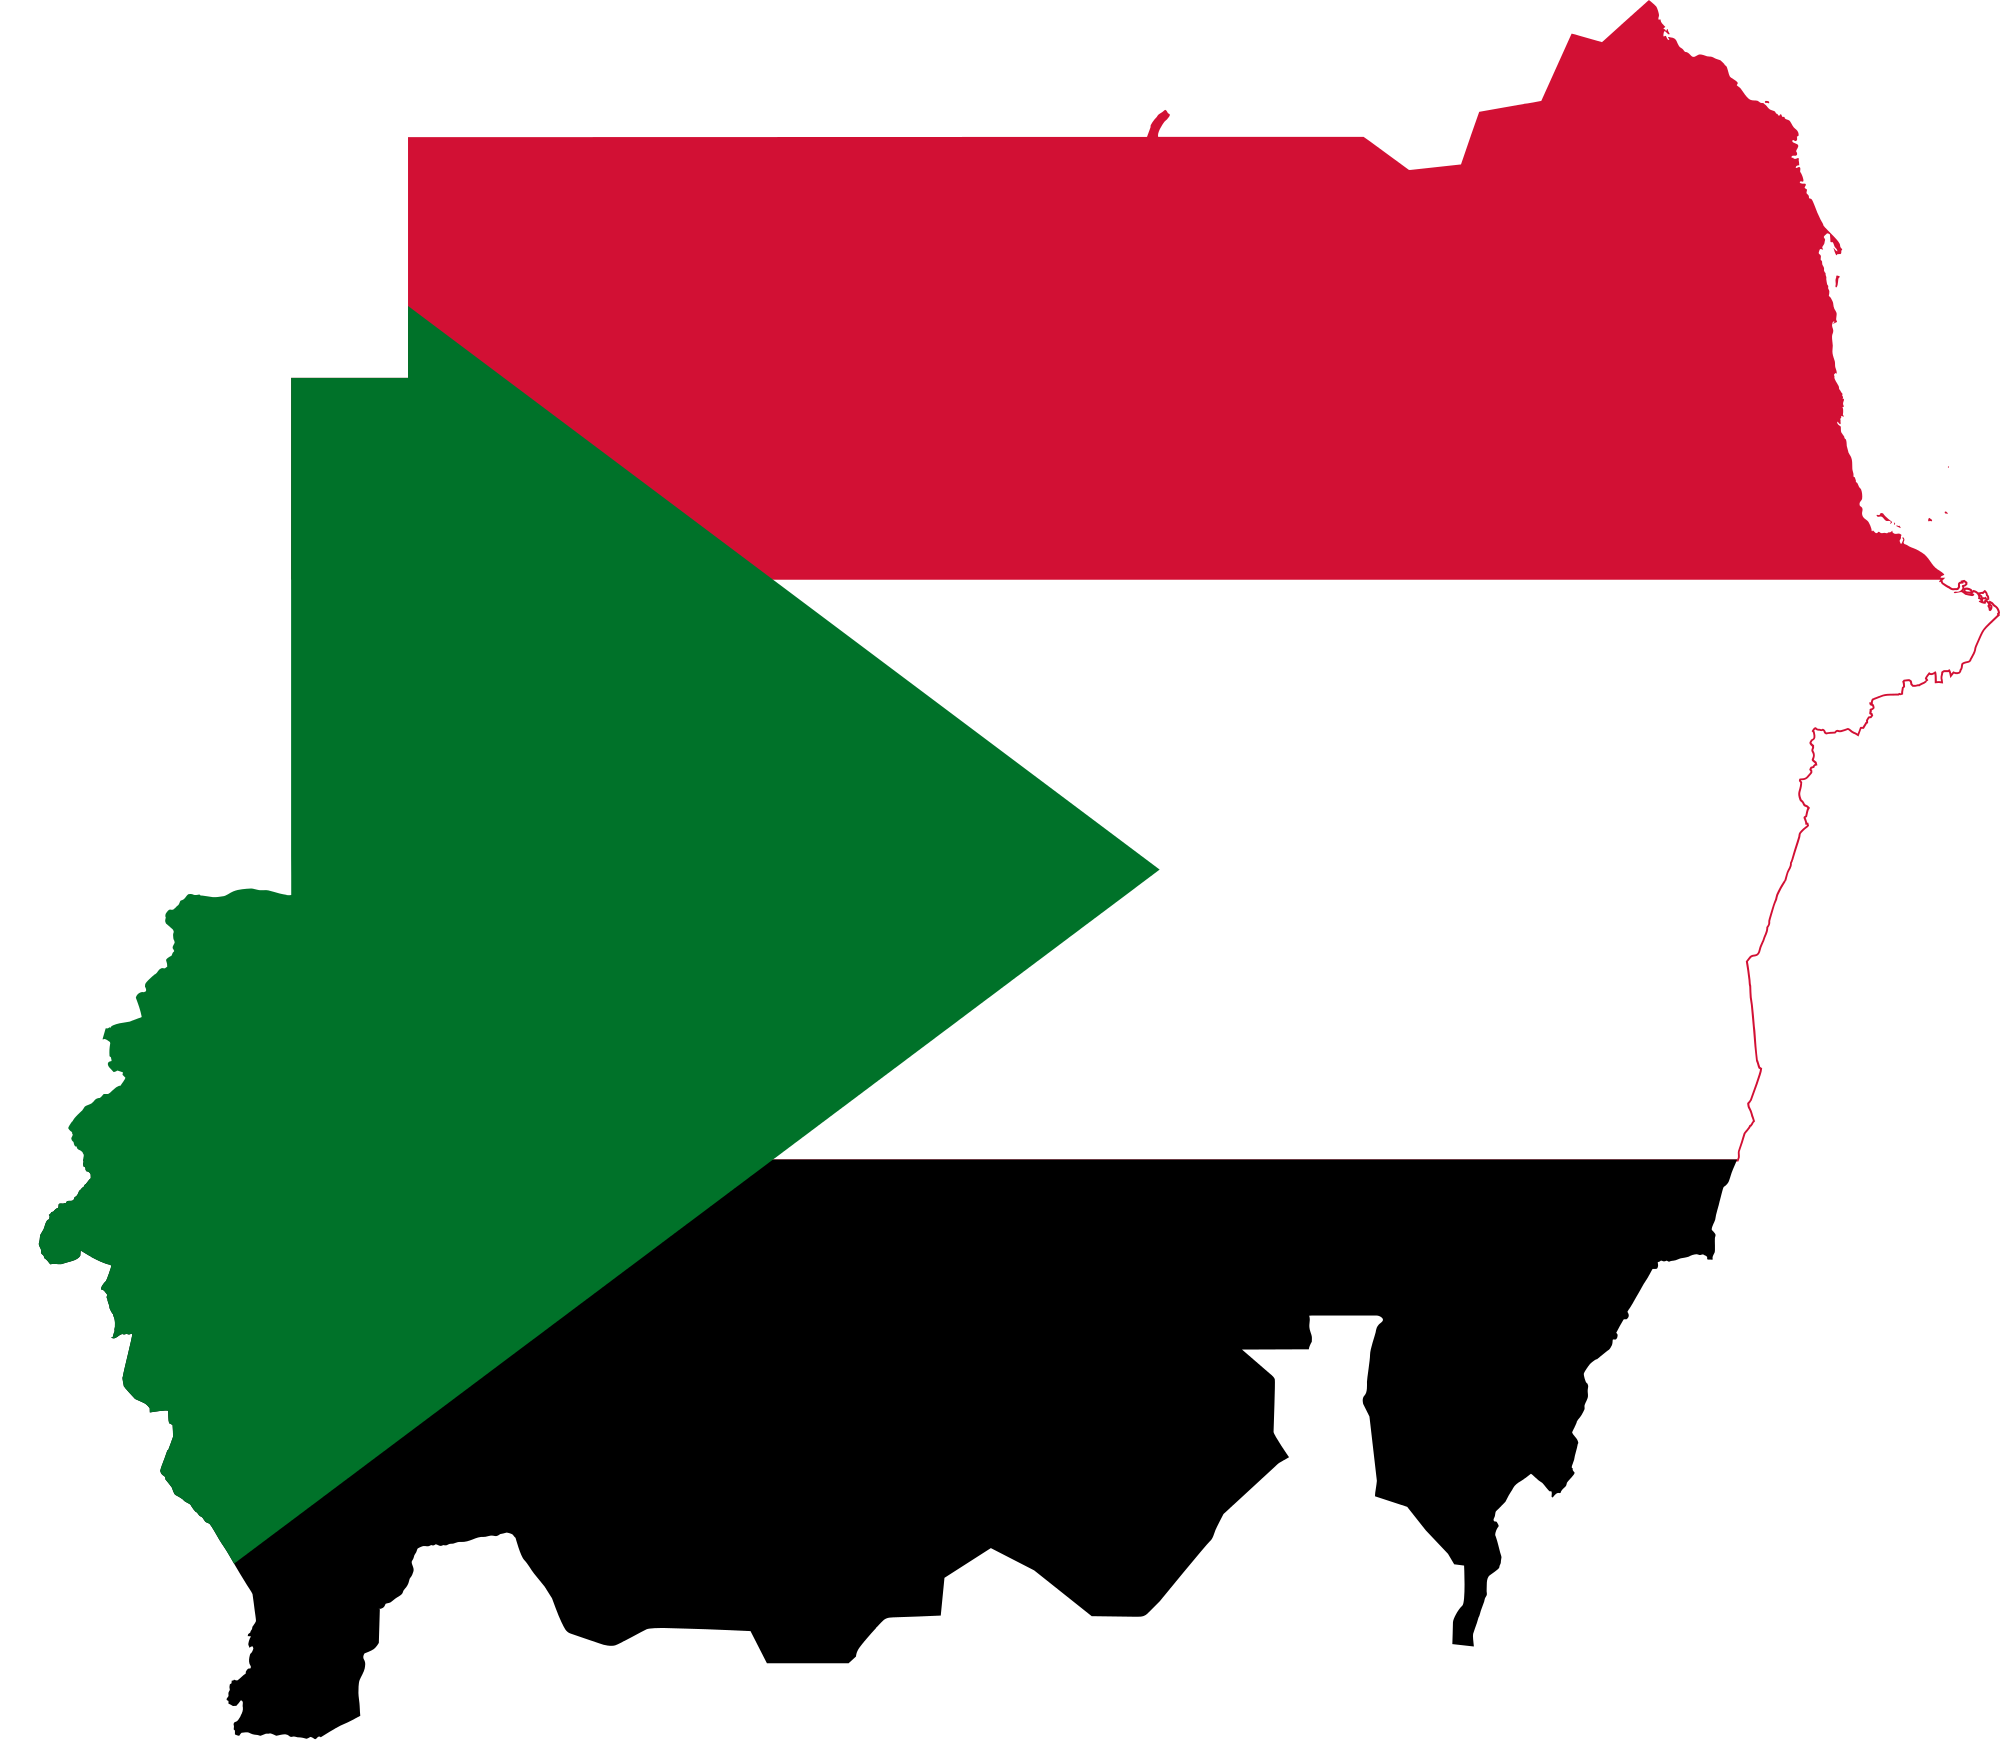 صور علم السودان رمزيات والوان العلم السوداني  ميكساتك